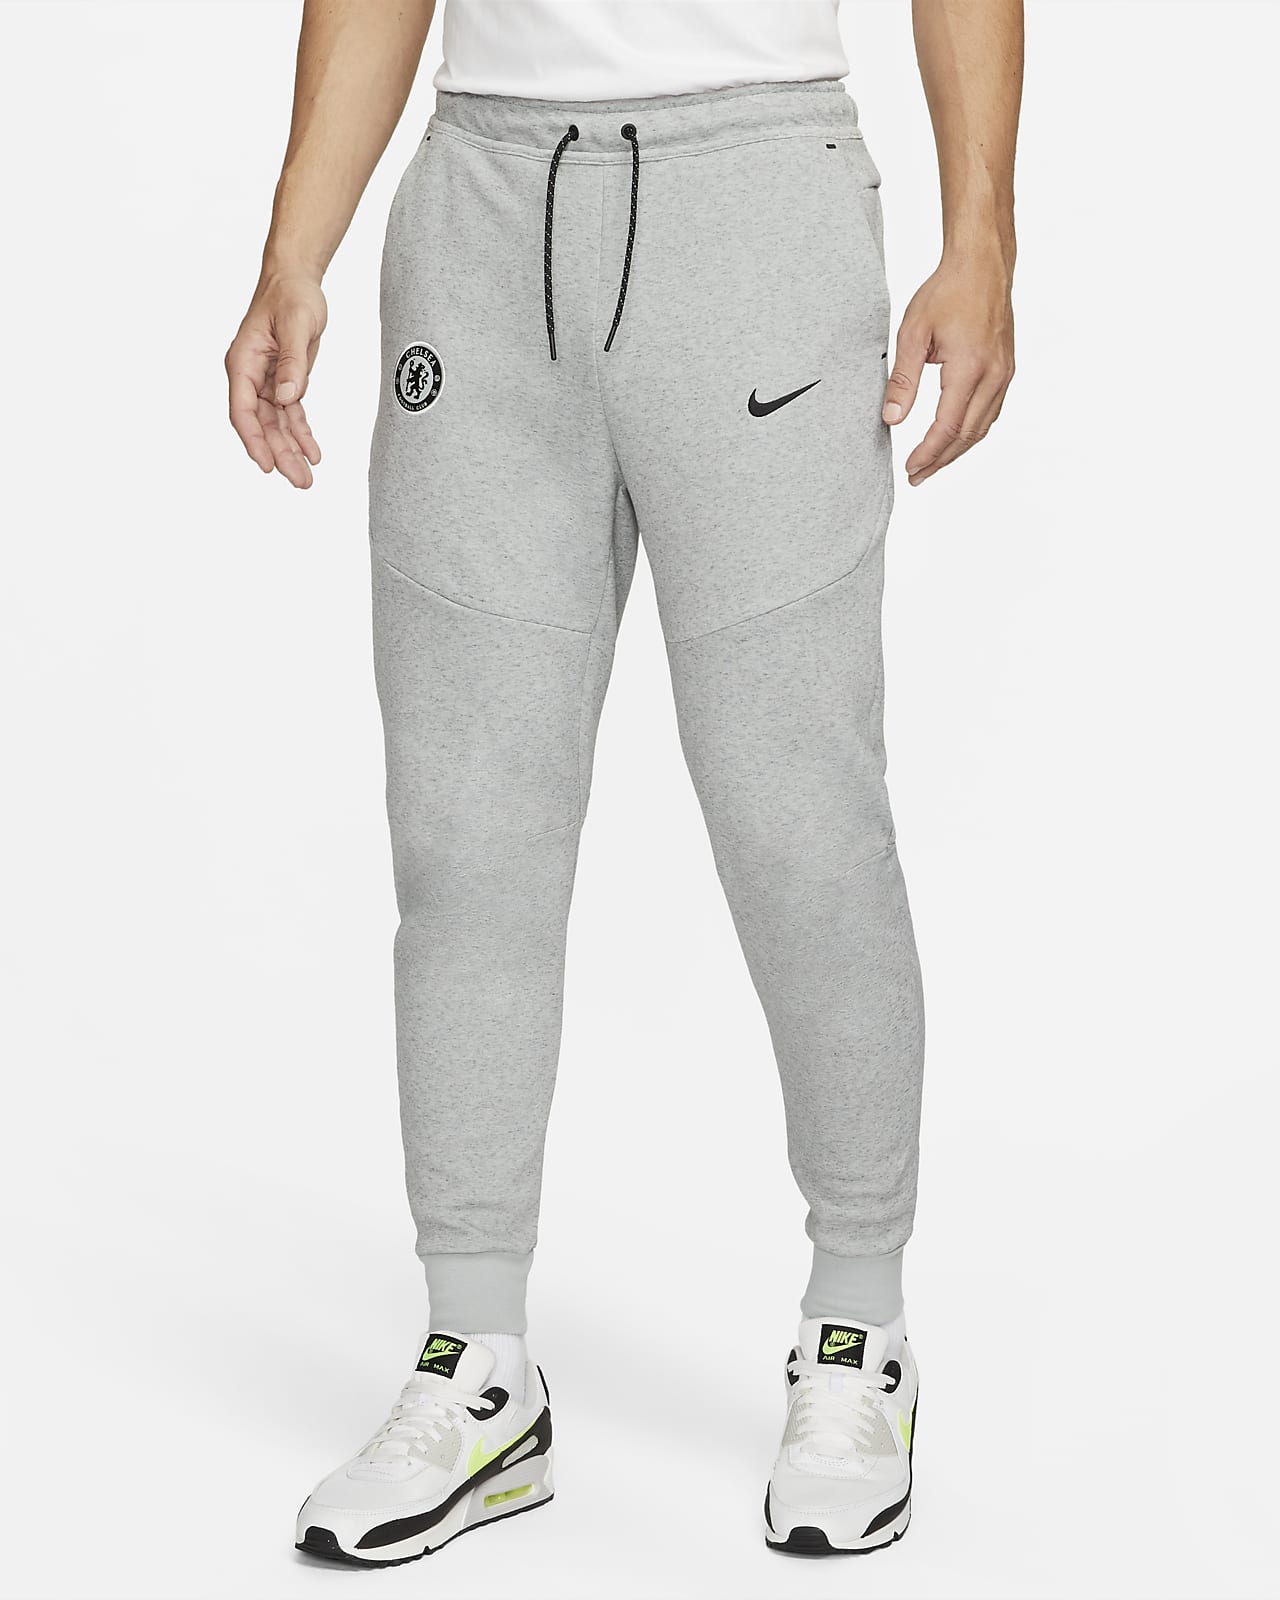 Chelsea FC Tech Fleece (tredjedrakt) Nike Football joggebukse til herre